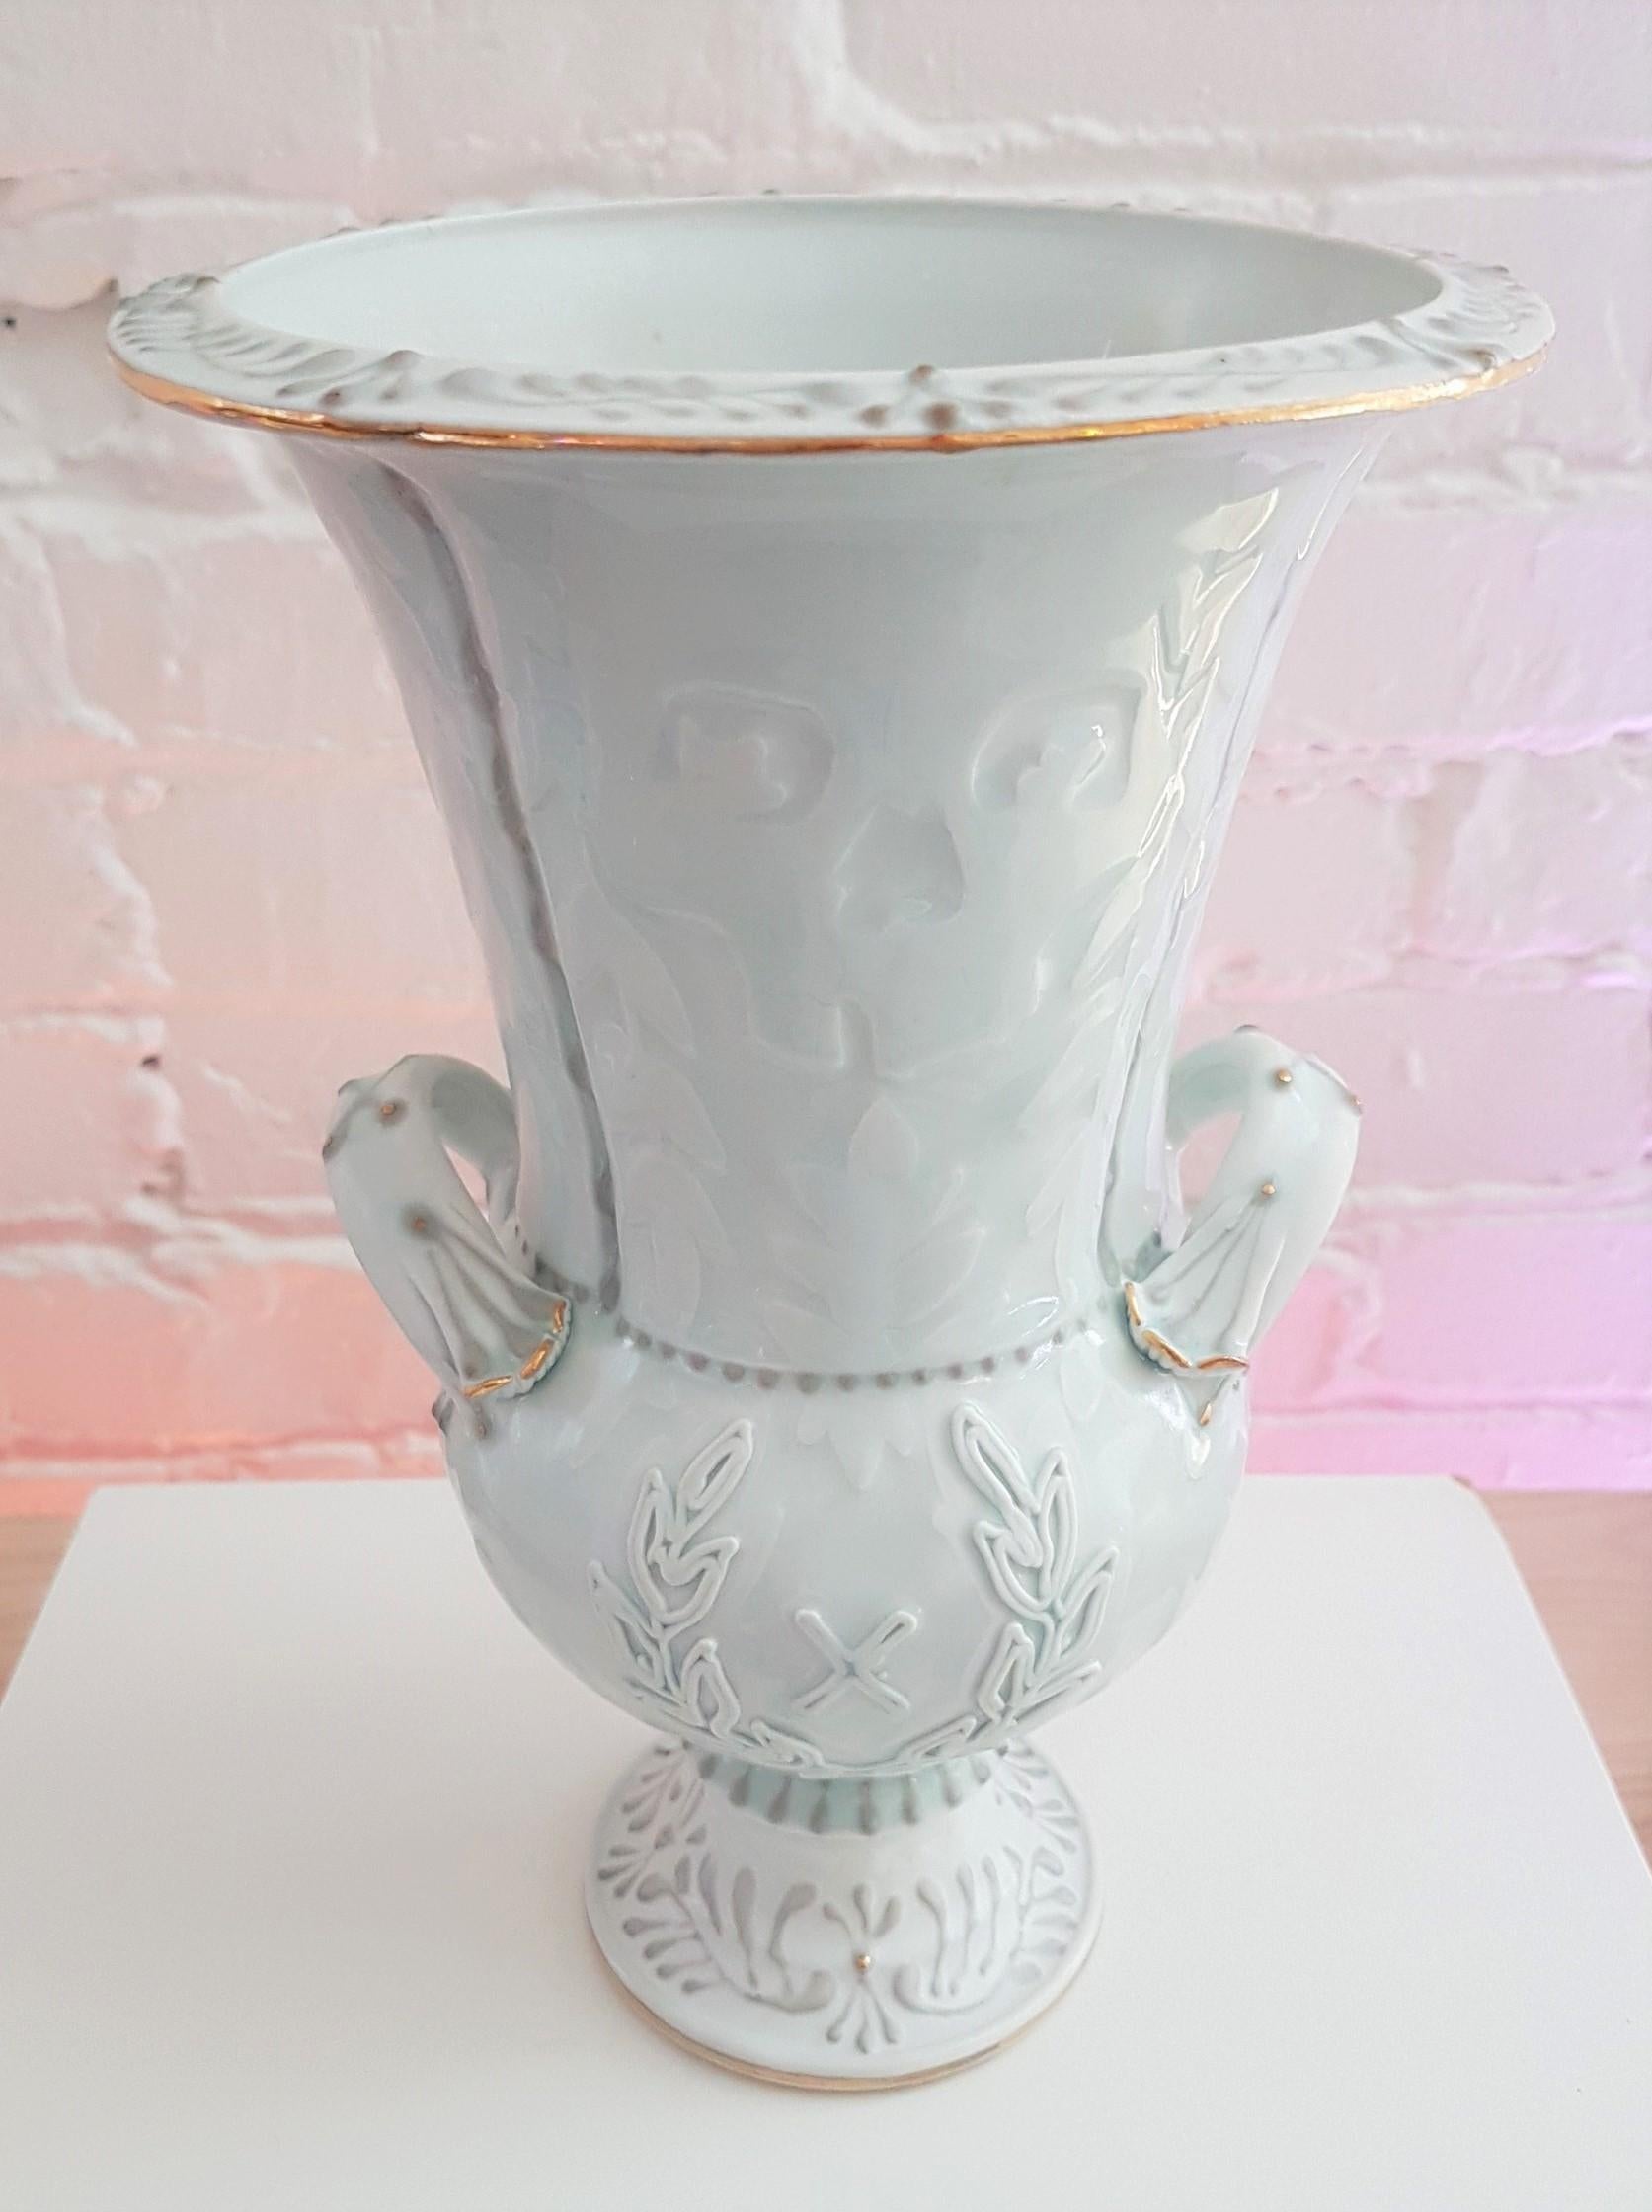 Michael Stumbras Figurative Sculpture – Die Vase ist mit einem Rahmen versehen